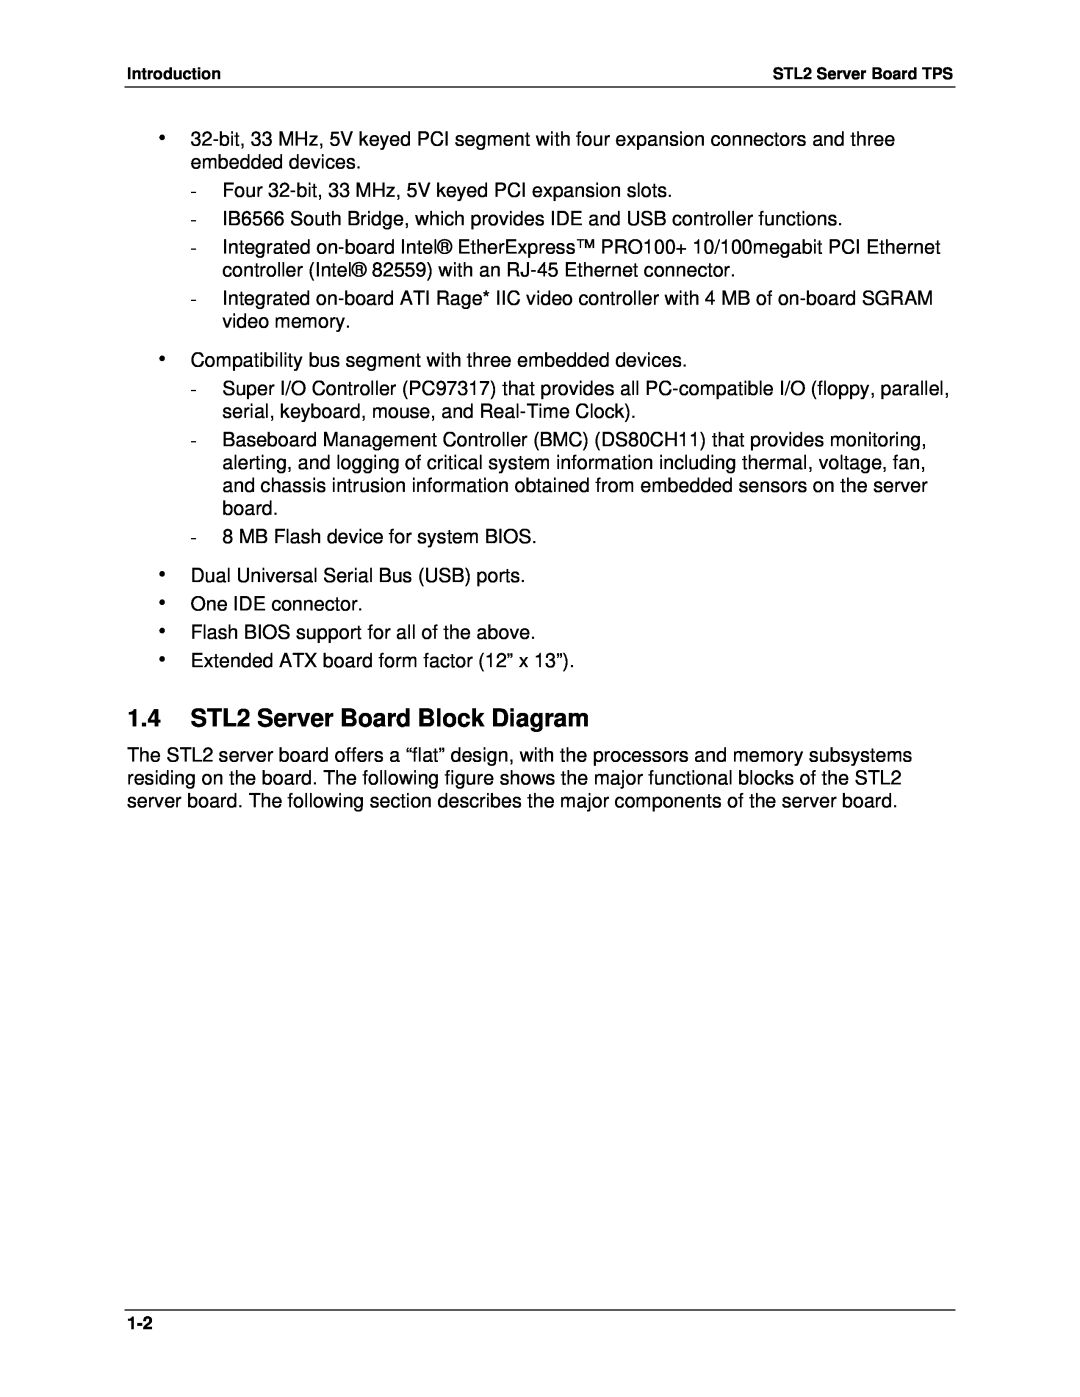 Intel manual 1.4STL2 Server Board Block Diagram 